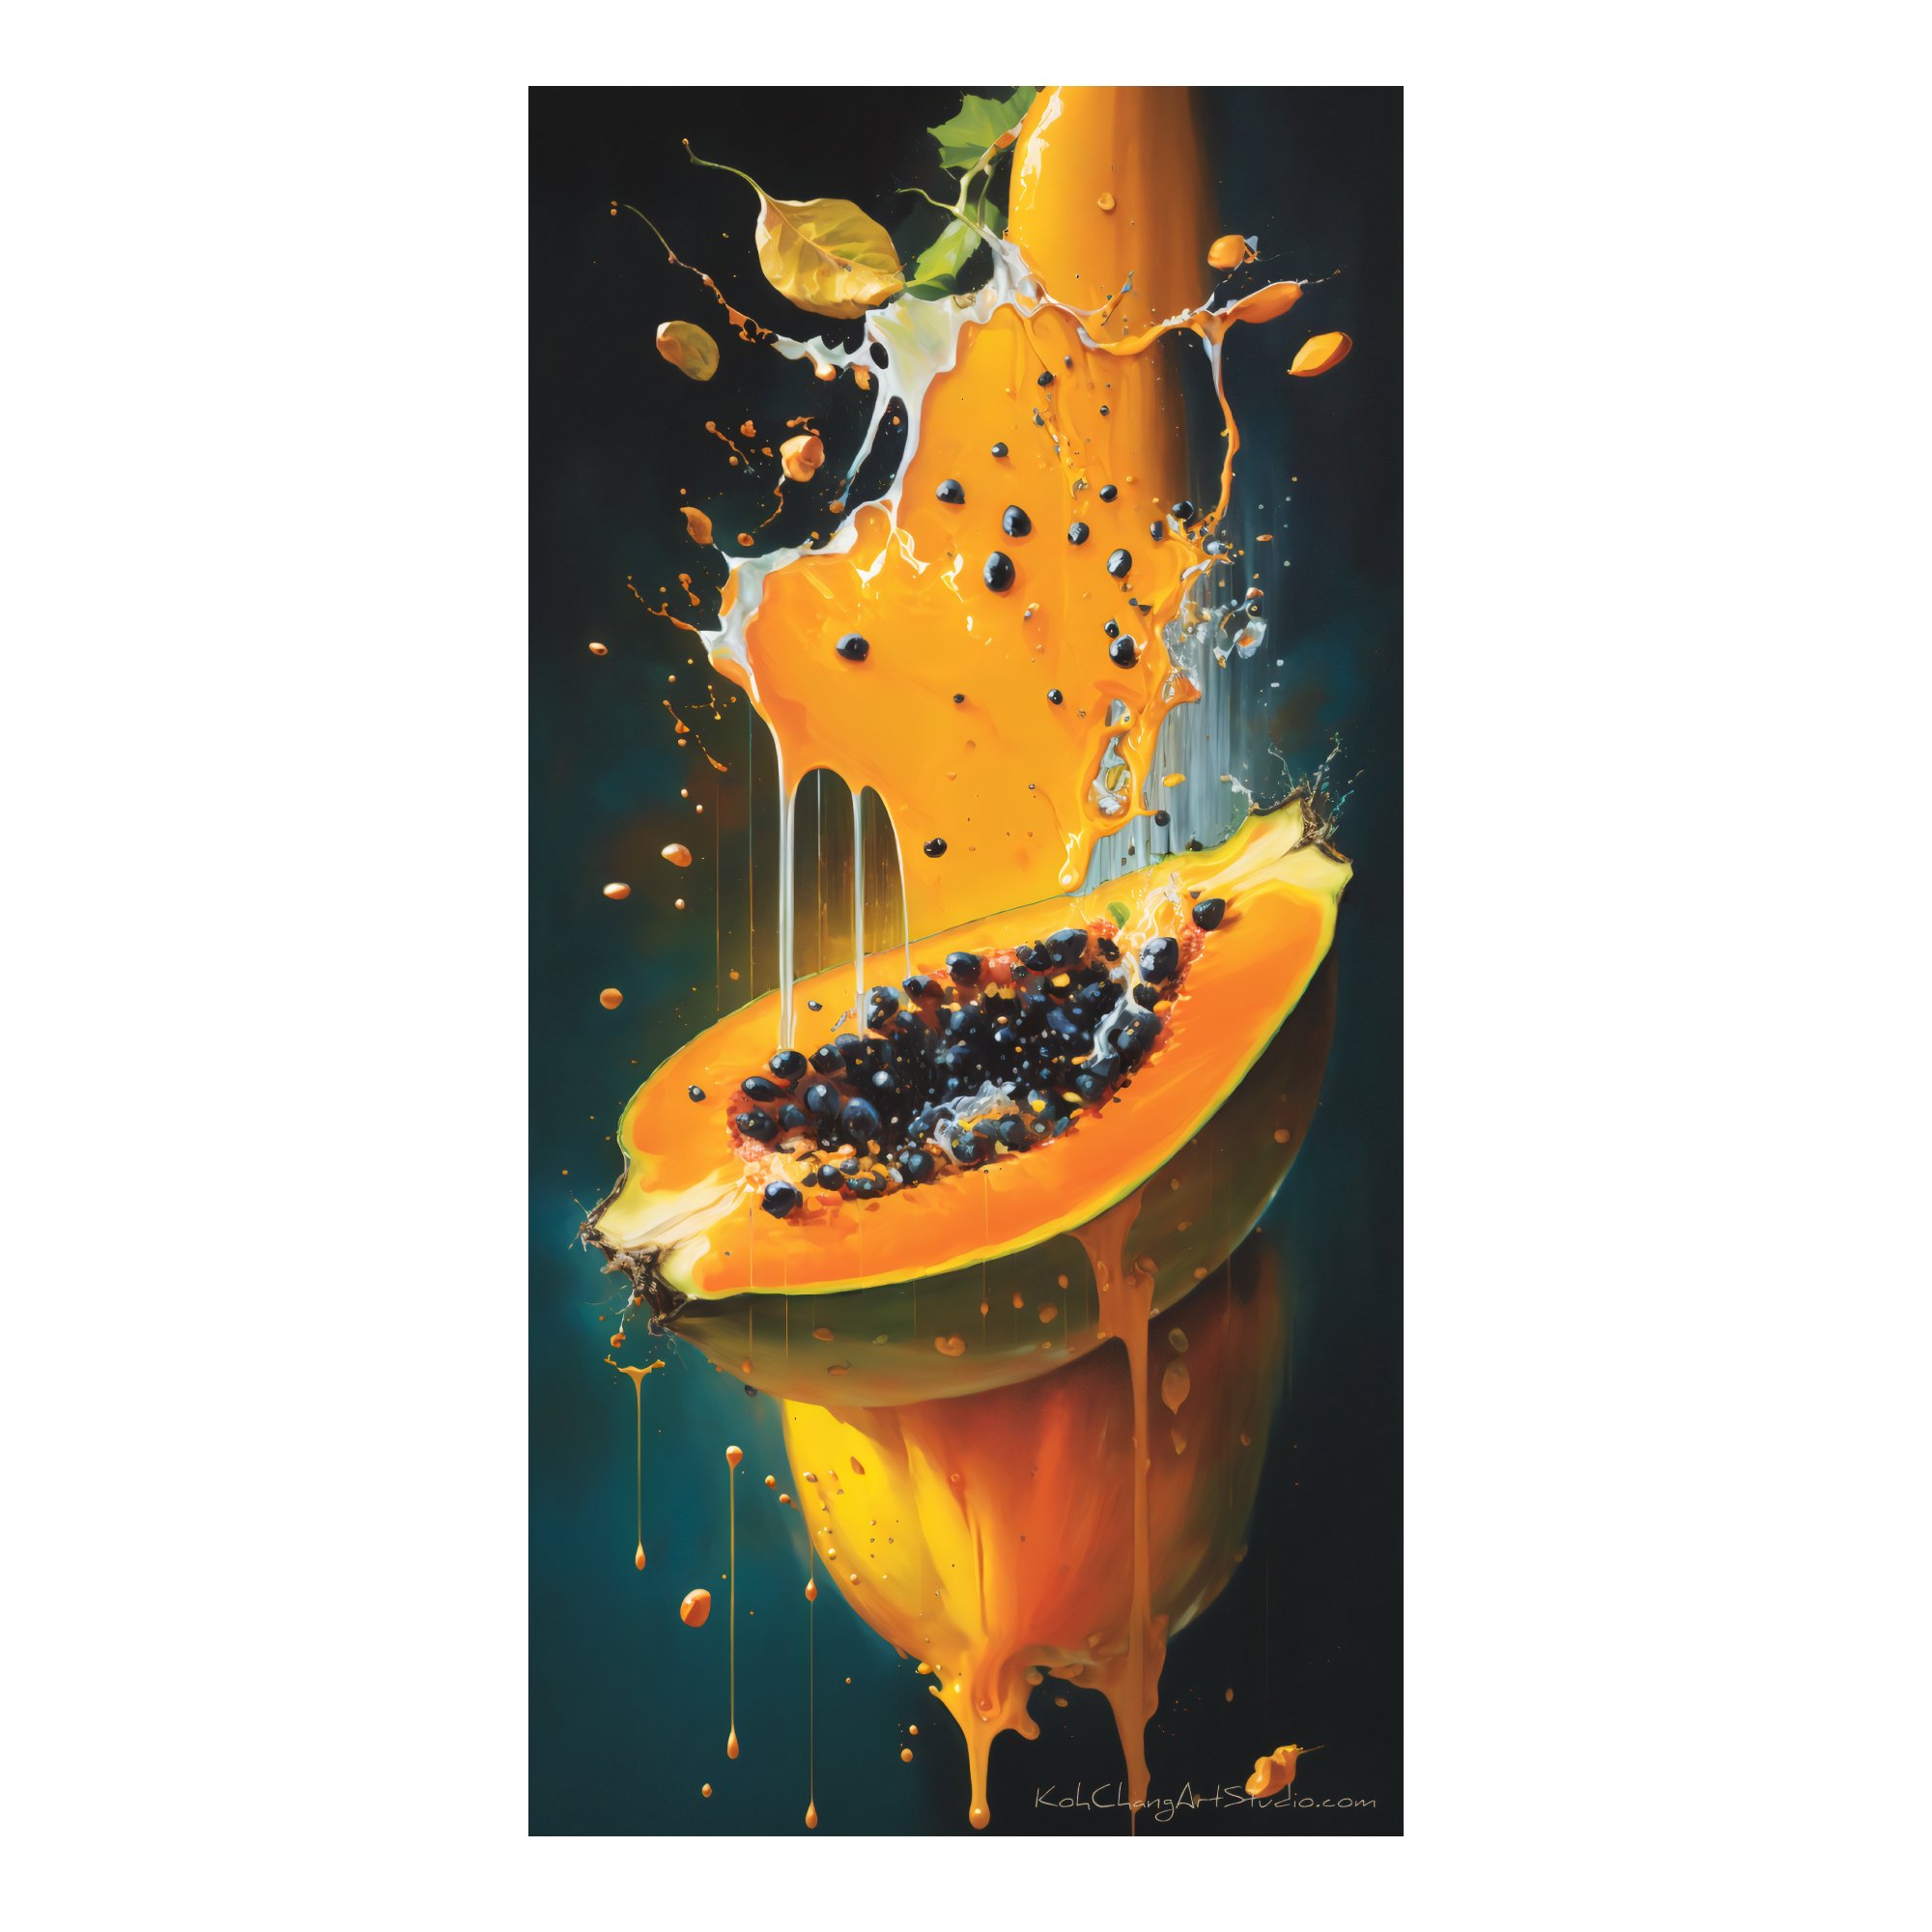 PAPAYA PULSE Design - Vibrant papaya pulsating with color, showcasing its tropical allure.